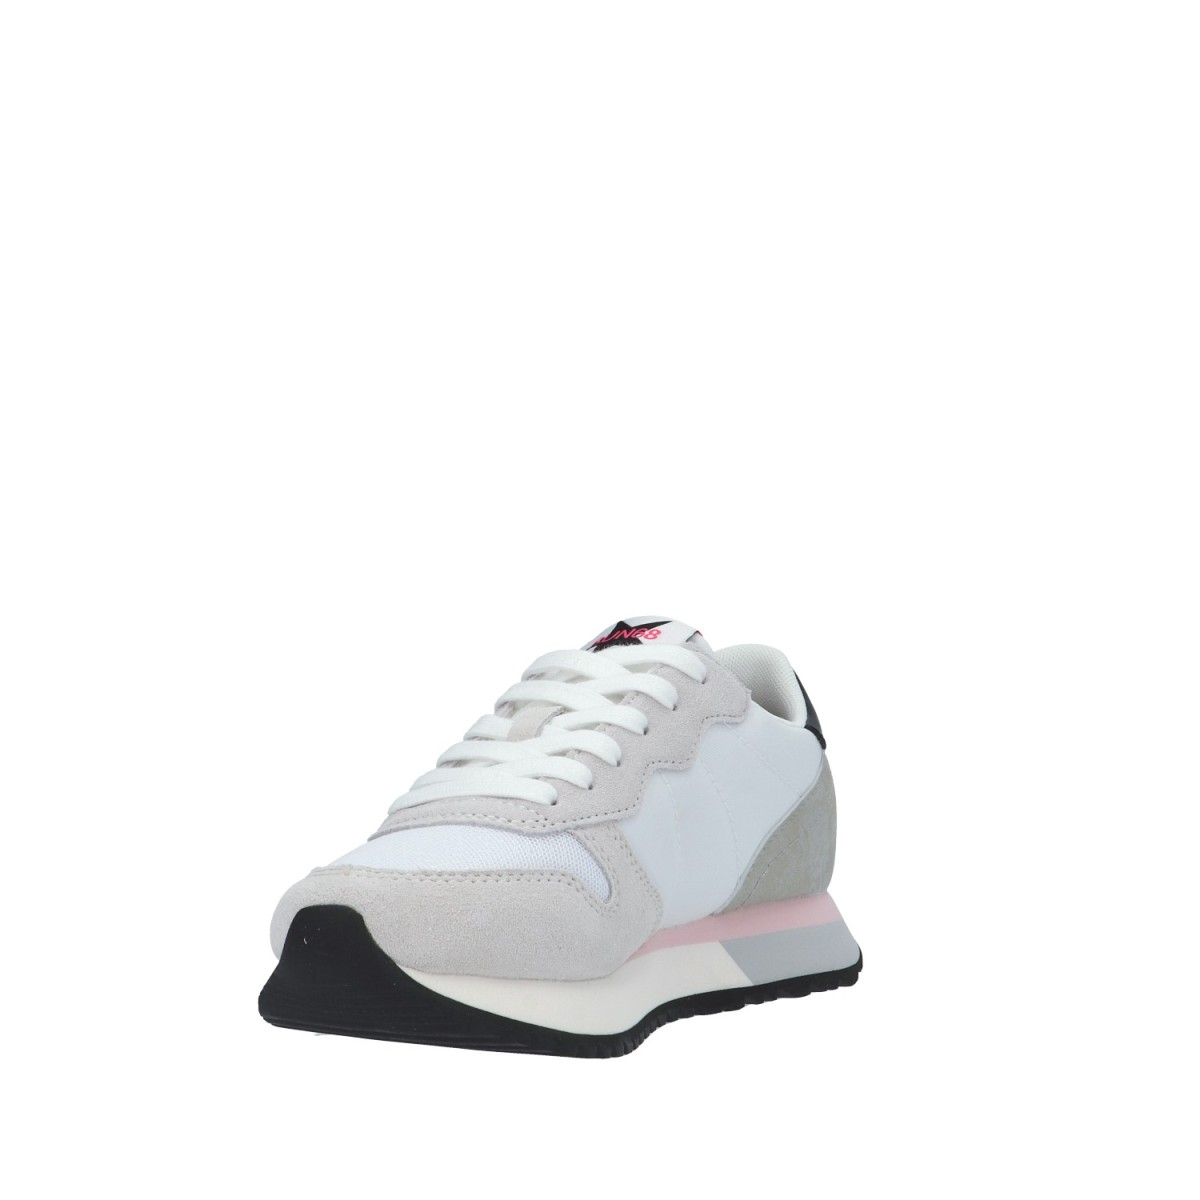 Sun68 Sneaker Bianco Gomma Z34211